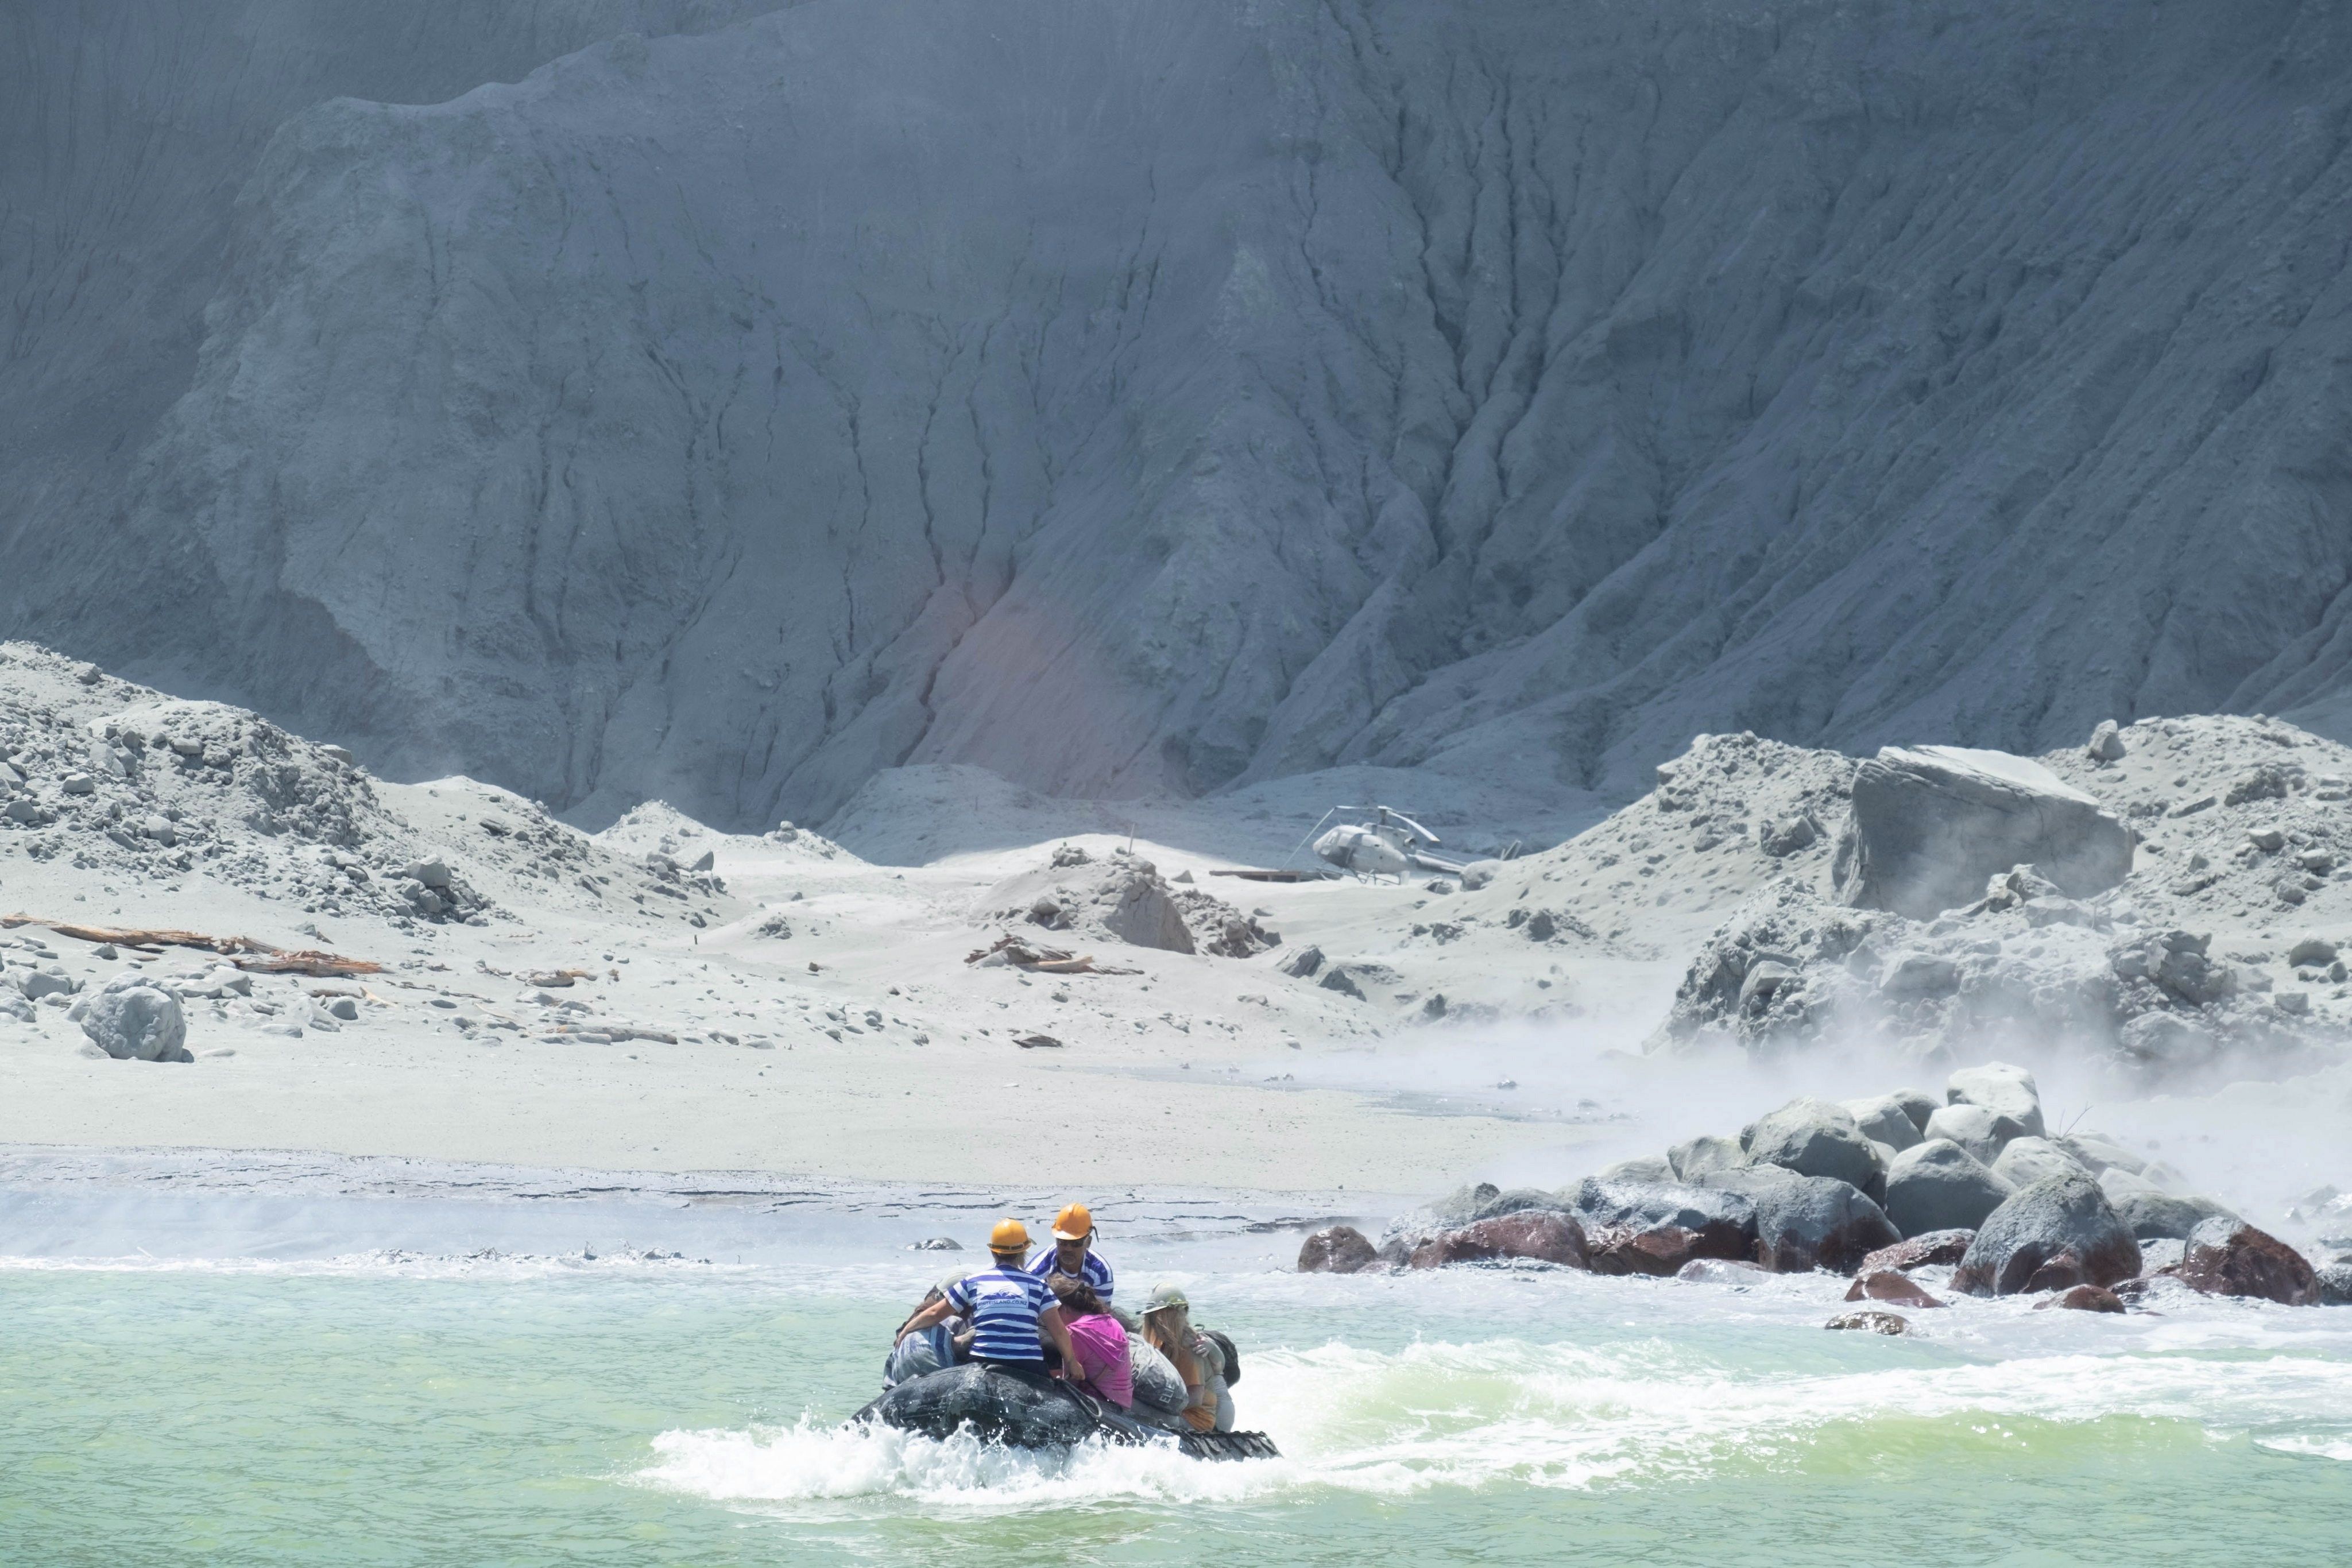 Una imagen proporcionada por el turista Michael Schade muestra a un grupo de personas que huyen en un barco  de White Island (volcán Whakaari), mientras el volcán está en erupción, en la Bahía de Plenty, Nueva Zelanda. (Foto Prensa Libre: EFE)